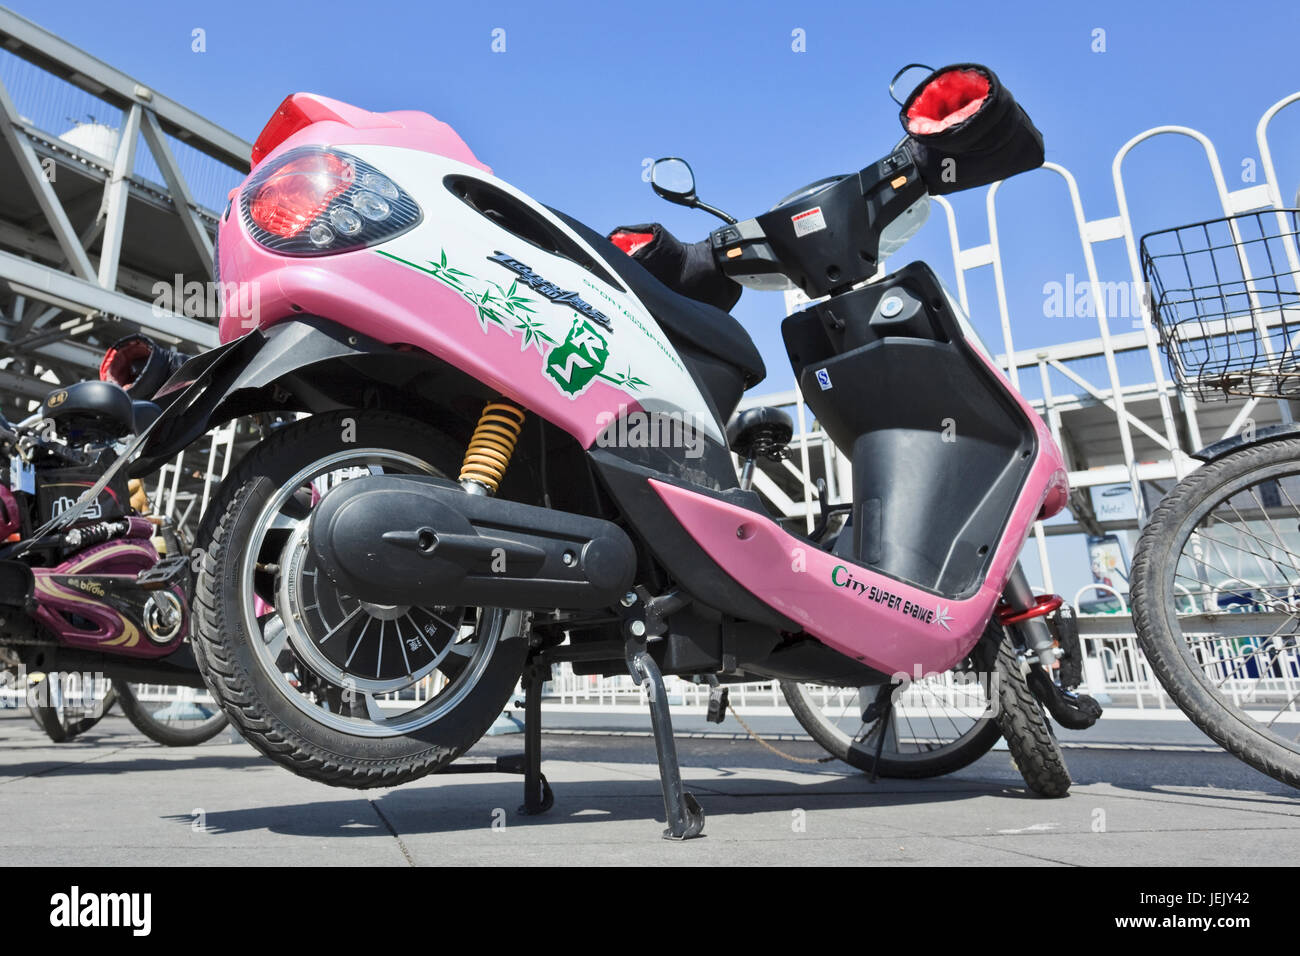 PÉKIN – 12 MARS 2012. Gros plan d'un scooter électrique. Les scooters sont une minorité à Pékin et dans les grandes villes chinoises. Banque D'Images